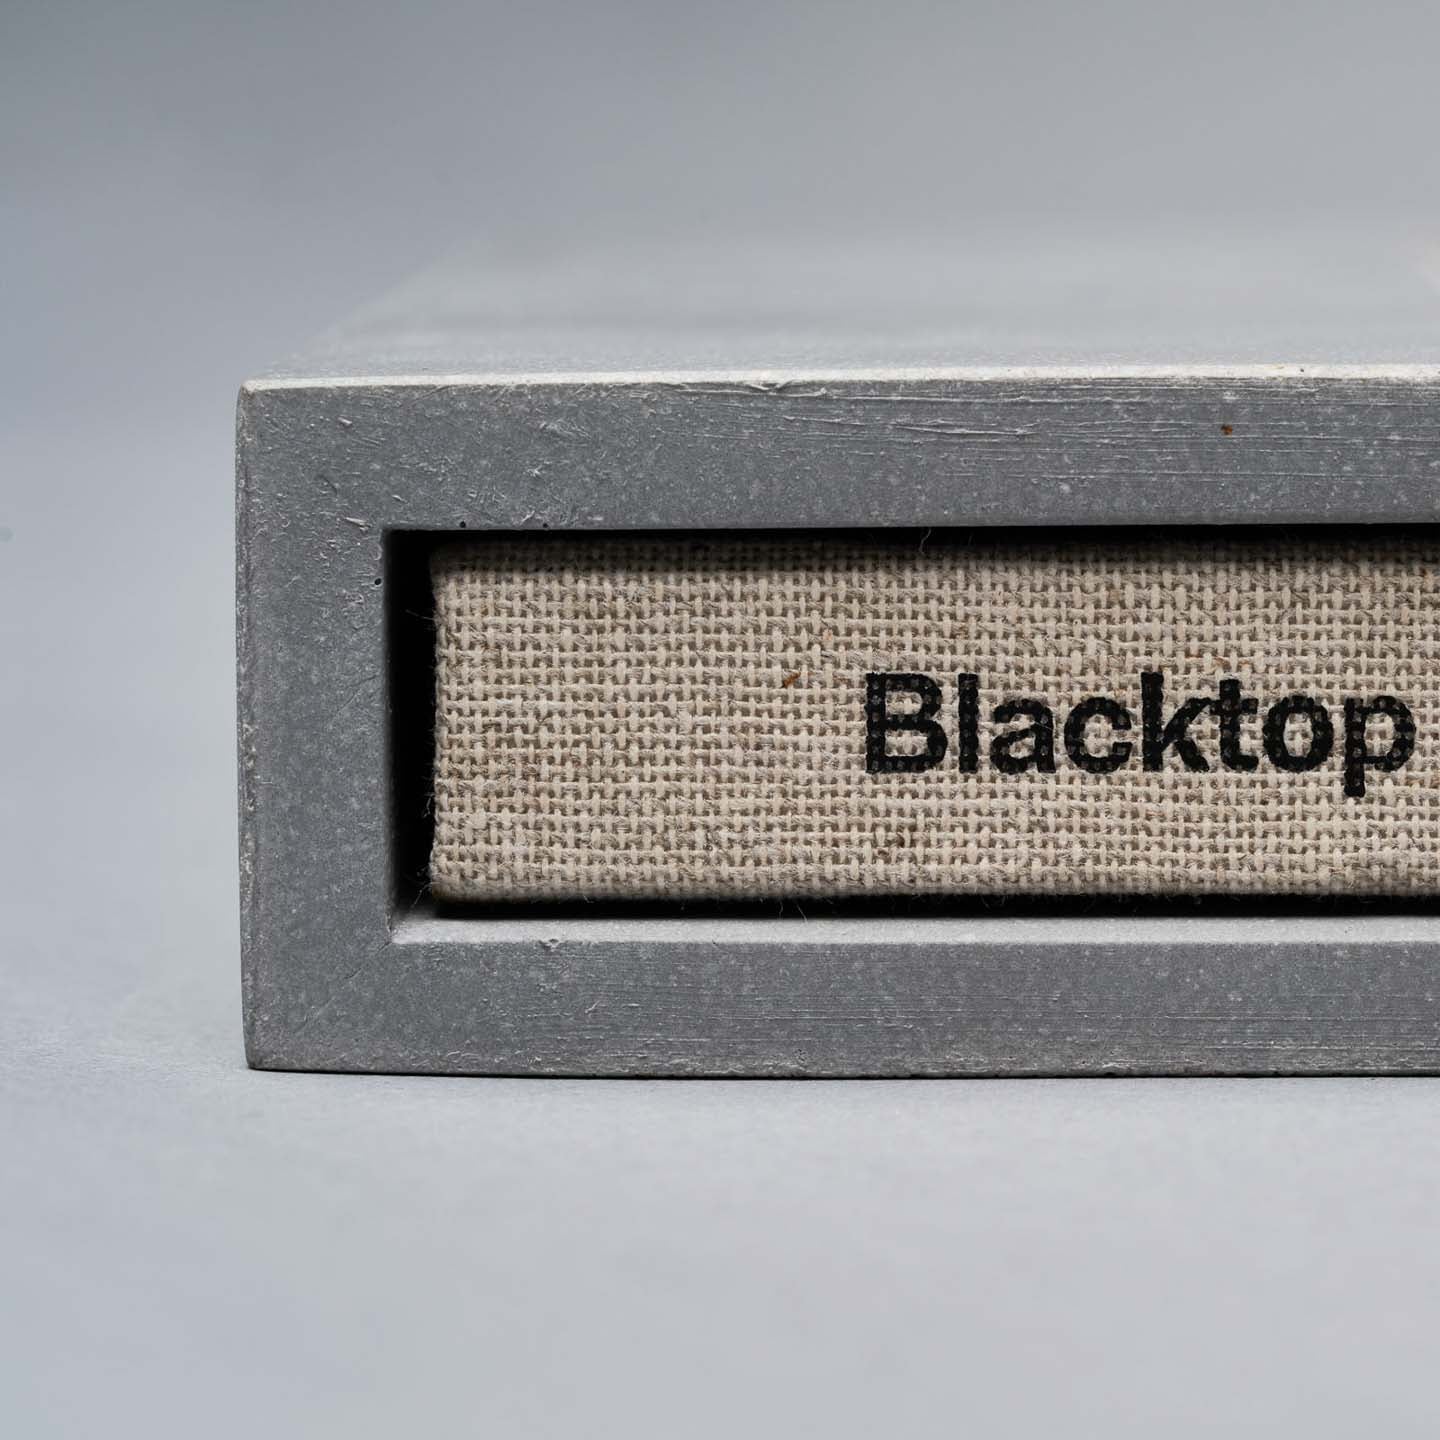 Blacktop Memento [ Concrete Pack ]